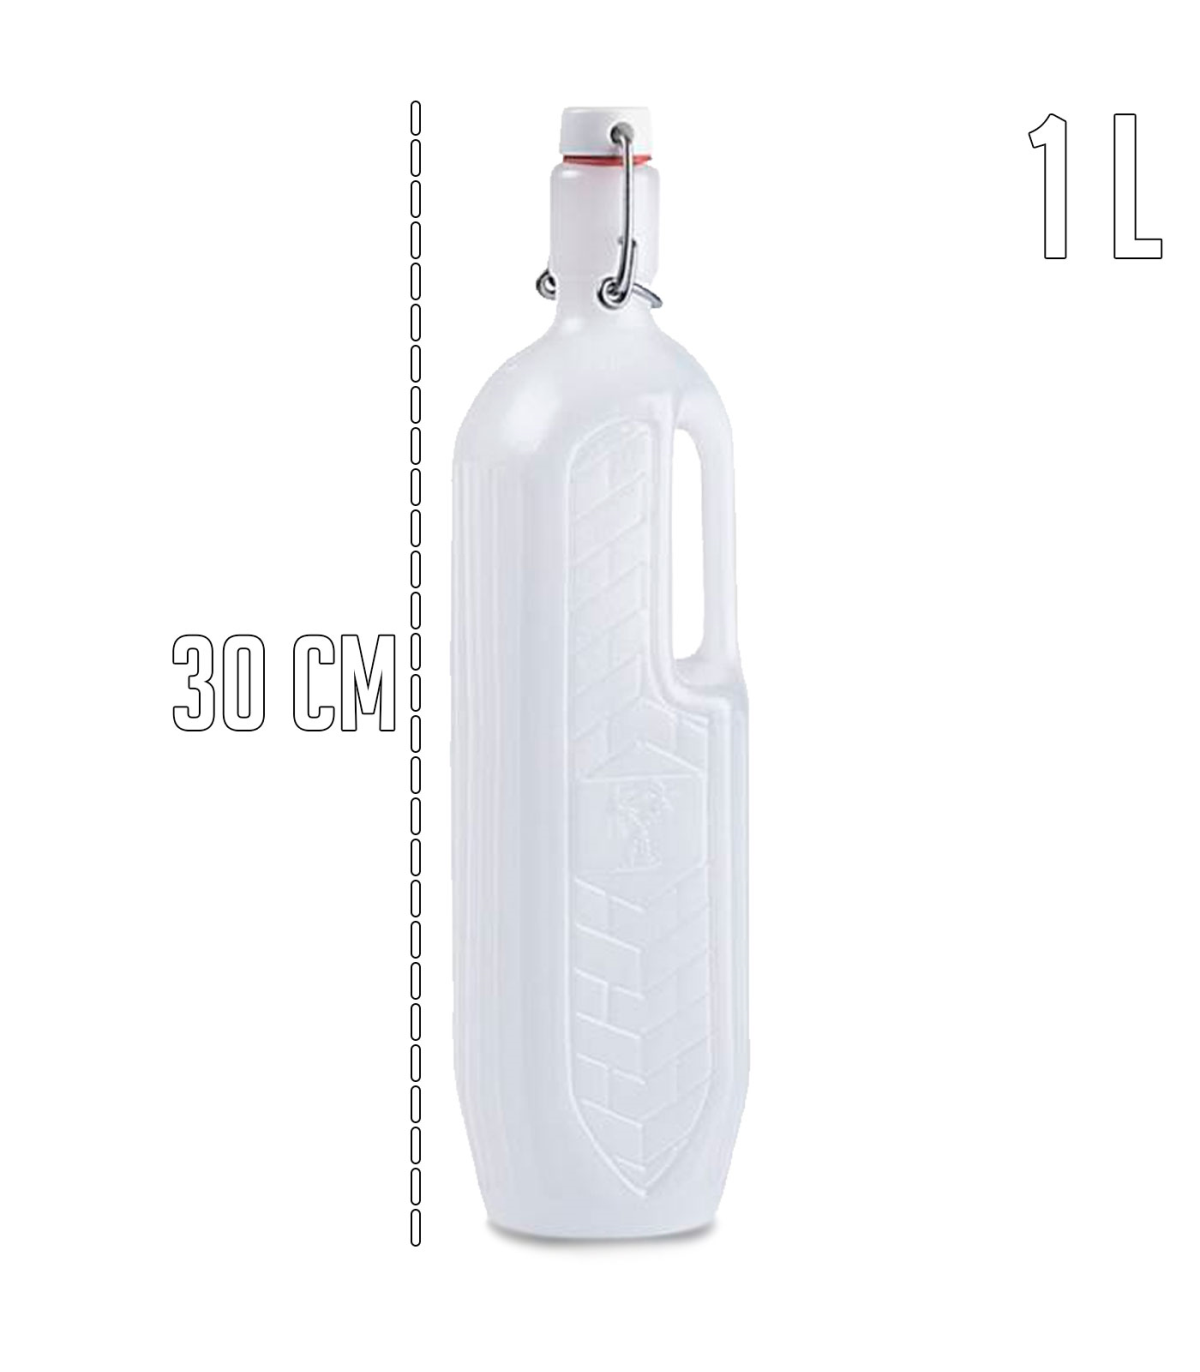 Tradineur - Botella de plástico con asa, garrafa, bidón agua sin